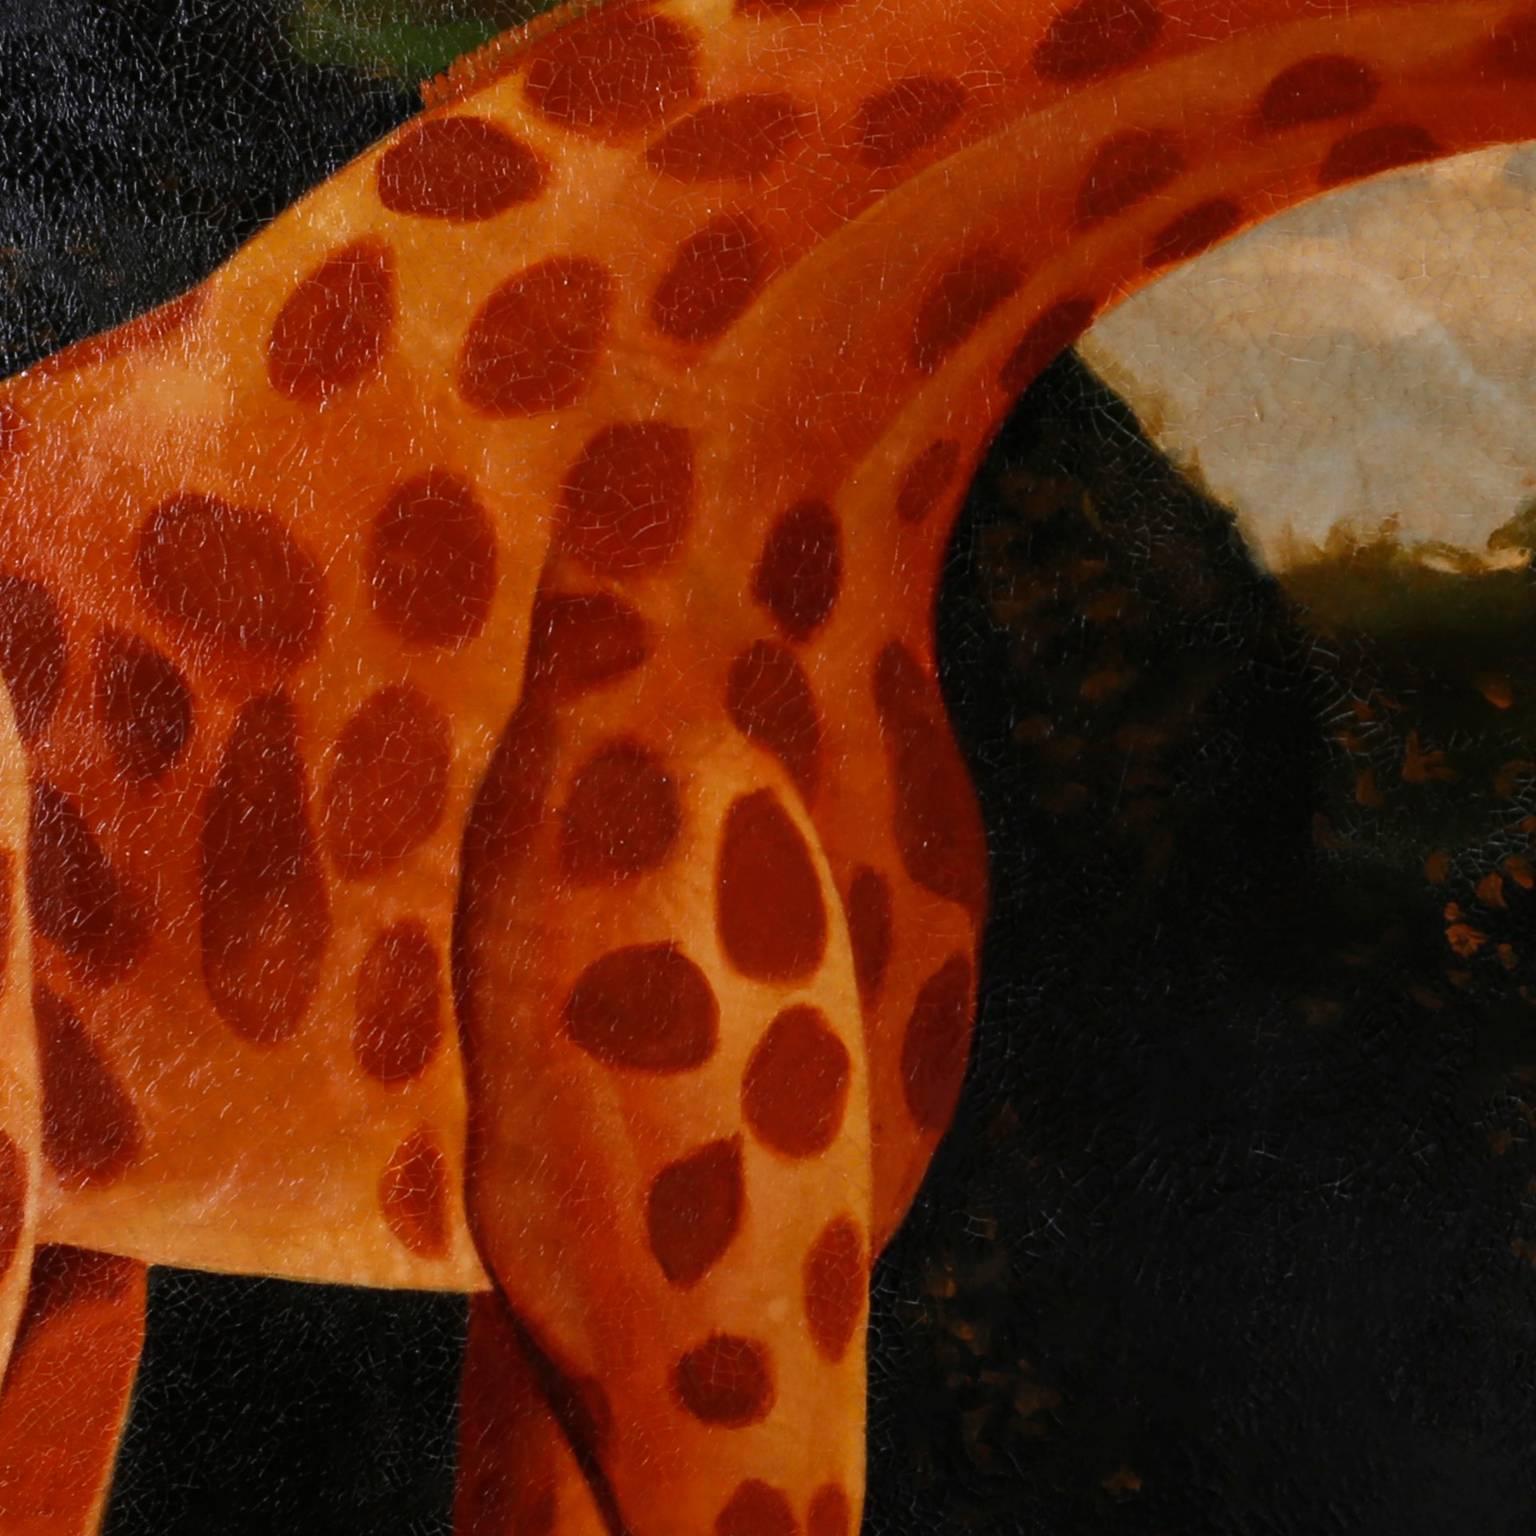 Folk Art Oil Painting on Canvas of a Giraffe by Reginald Baxter